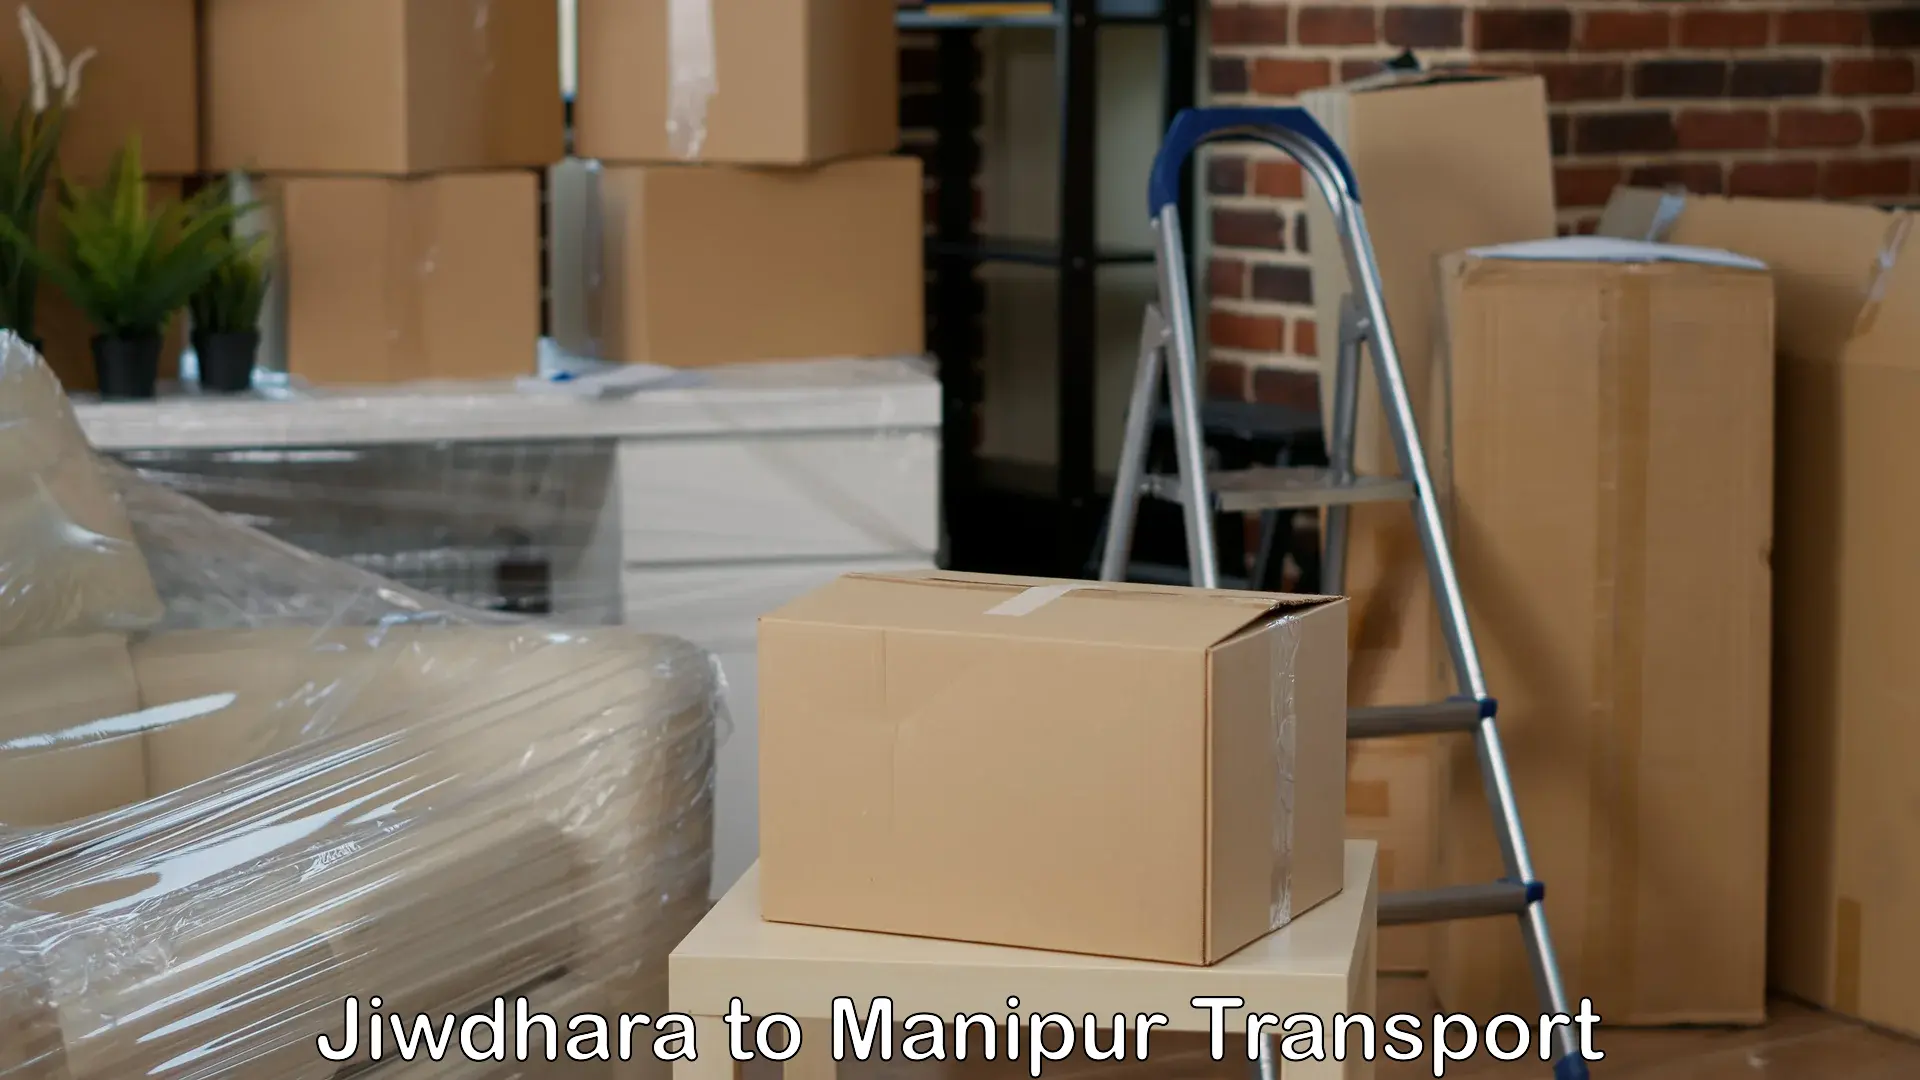 Shipping partner Jiwdhara to Manipur